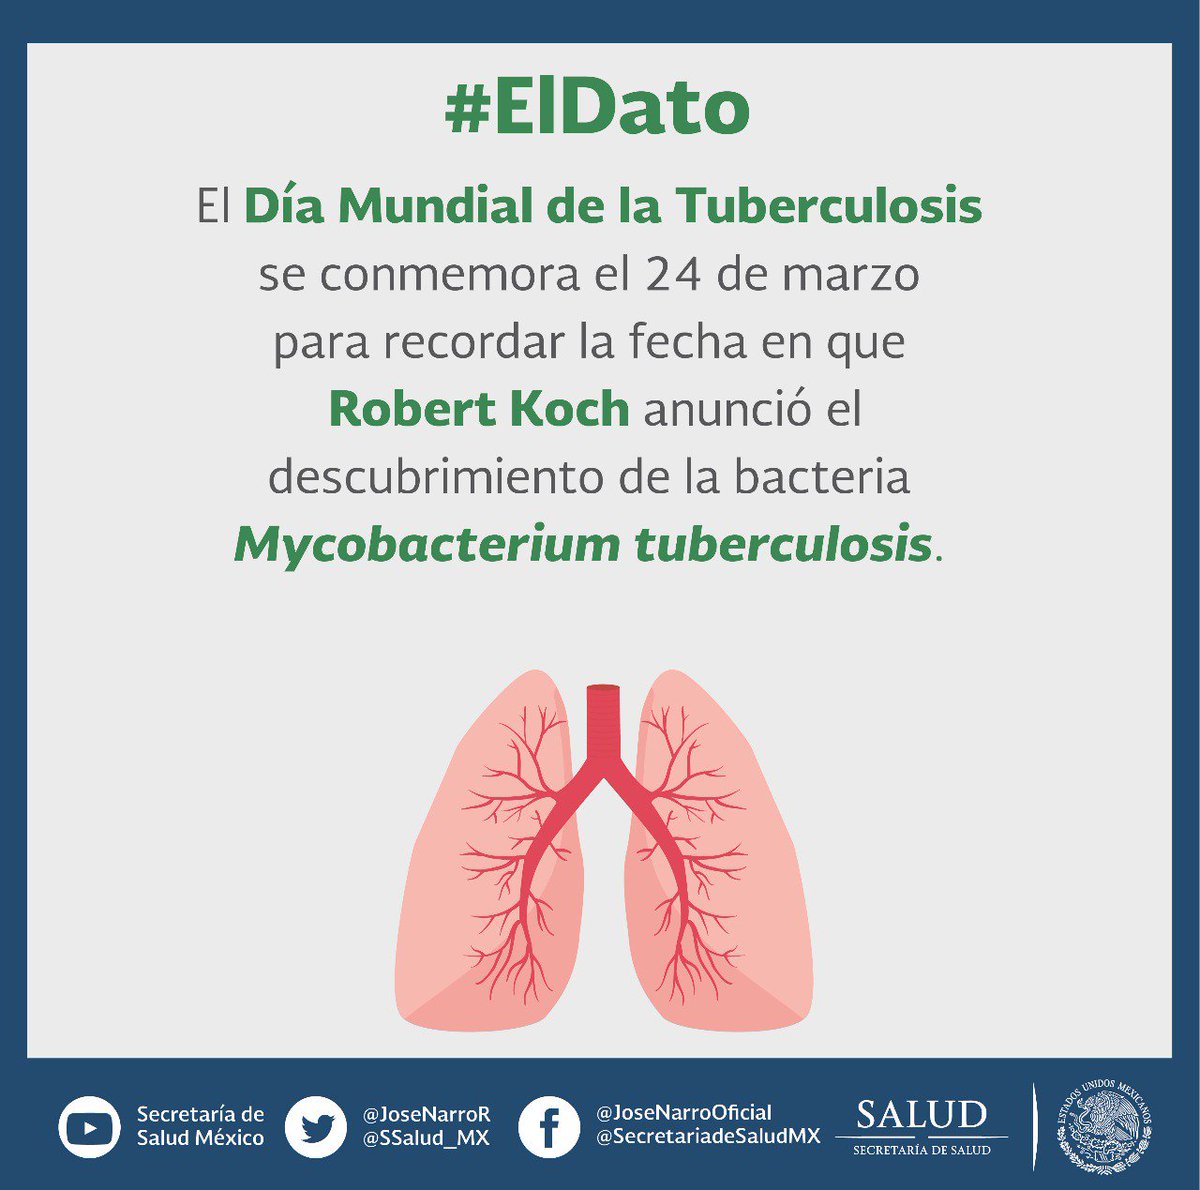 El 24 de marzo de 1882, Robert Koch anunció el descubrimiento de la bacteria causante de la tuberculosis #DíaMundialDeLaTuberculosis #FinDeLaTB #EndTB